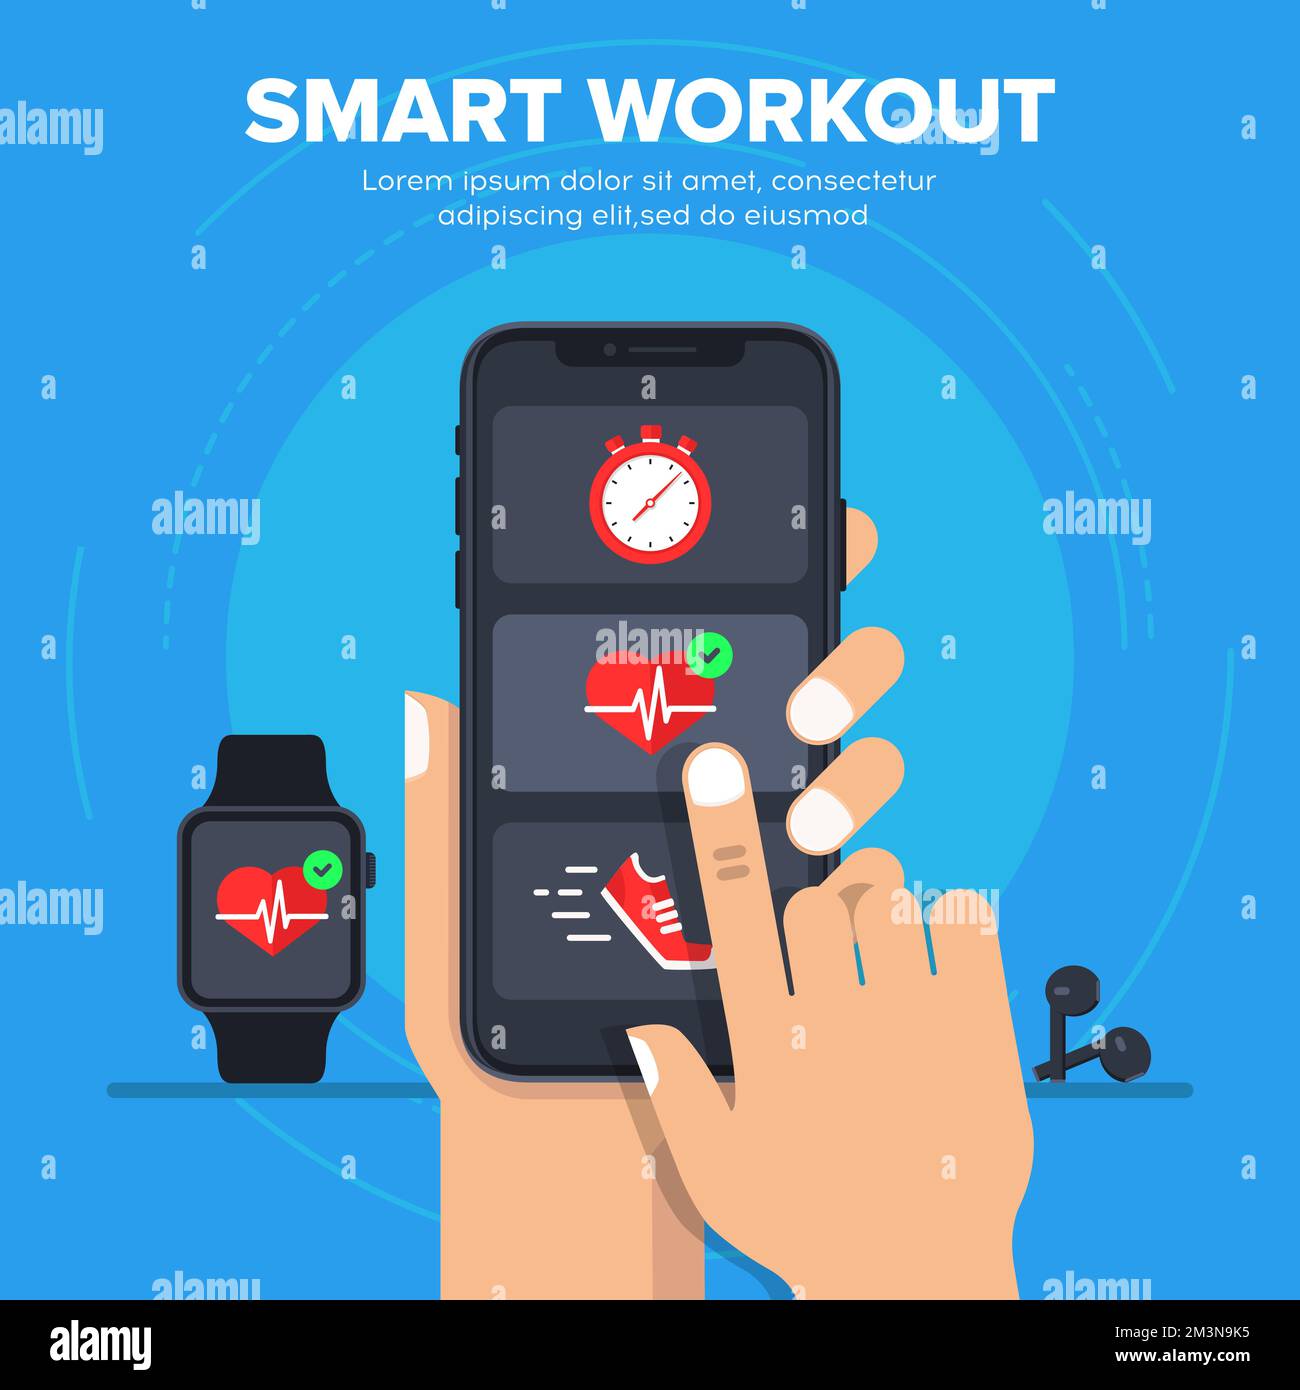 Smart Workout Vector Illustrationskonzept. Smartphone-Synchronisierung mit einer Smartwatch. Intelligenter Fortschritt beim Fitnesstraining auf dem Smartphone. Vektor Stock Vektor